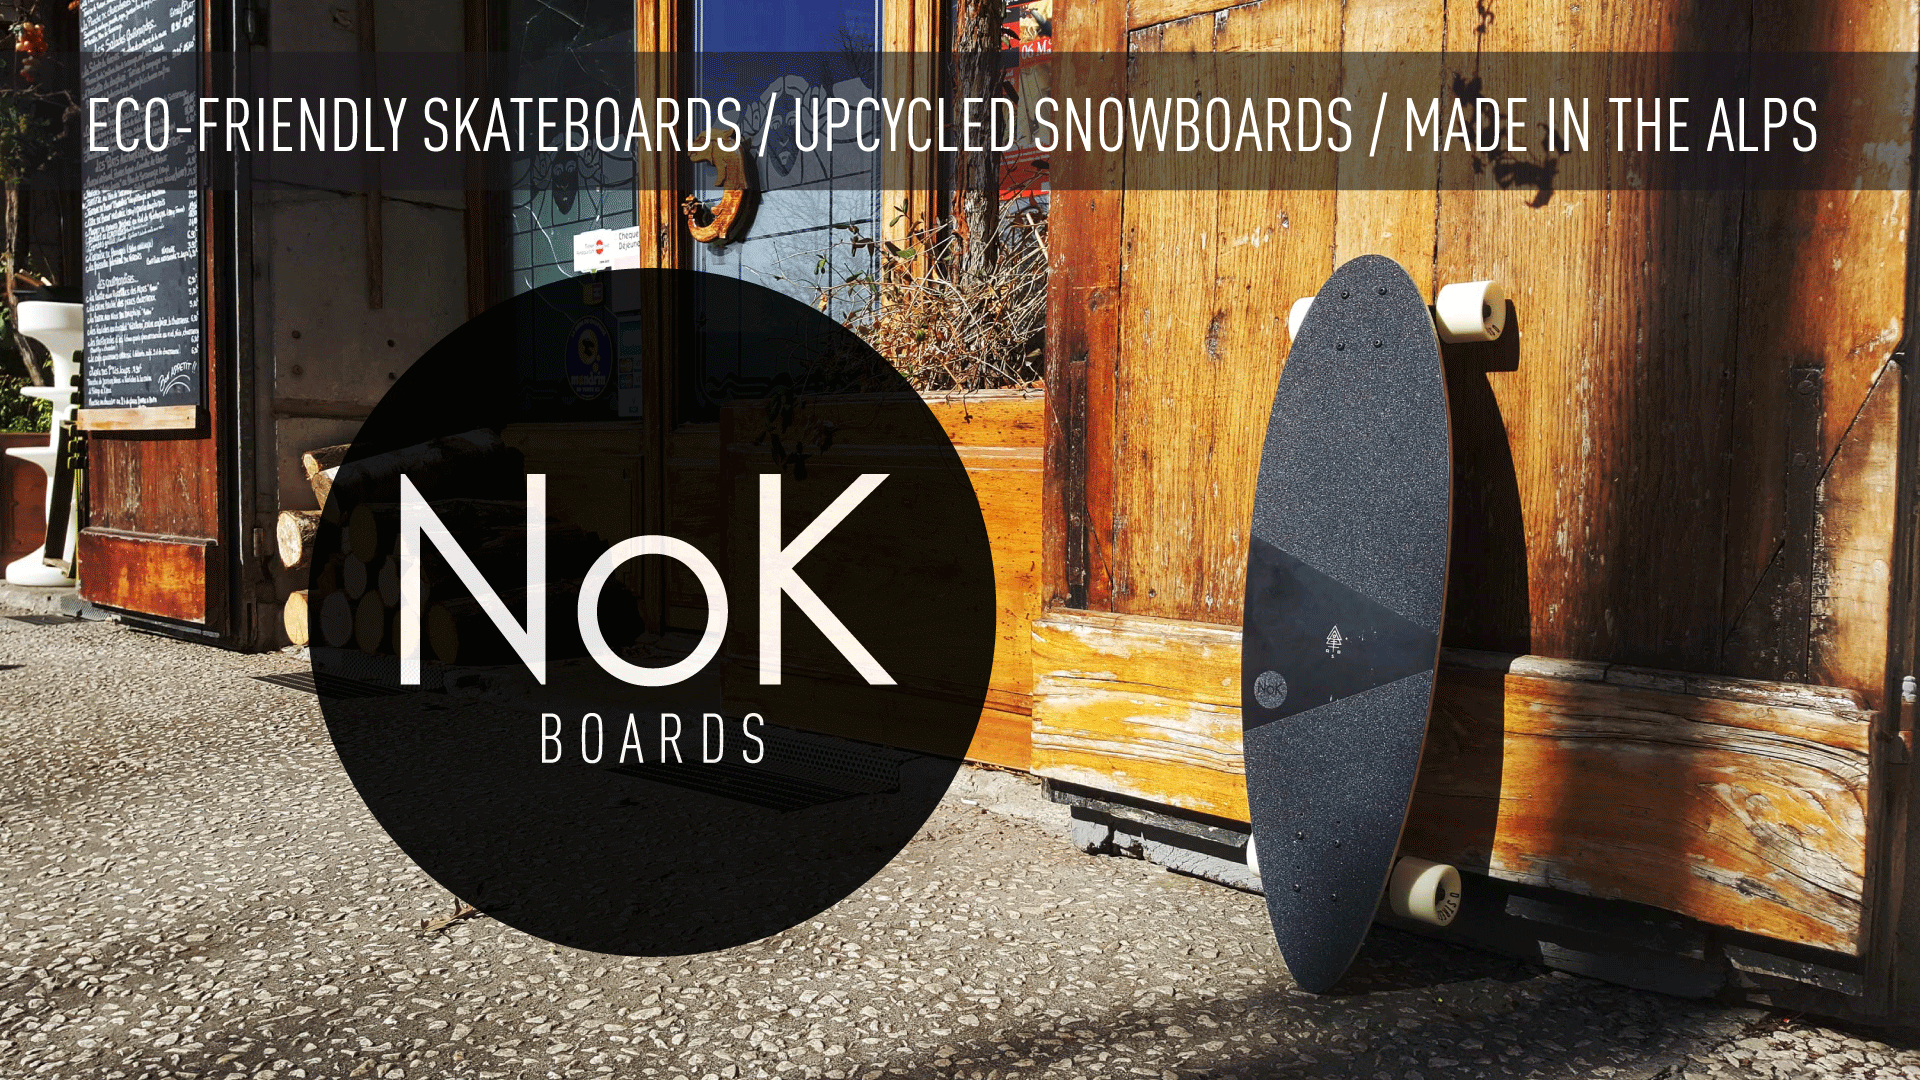 Découvrez et soutenez le projet NoK Boards - Eco-friendly skateboards